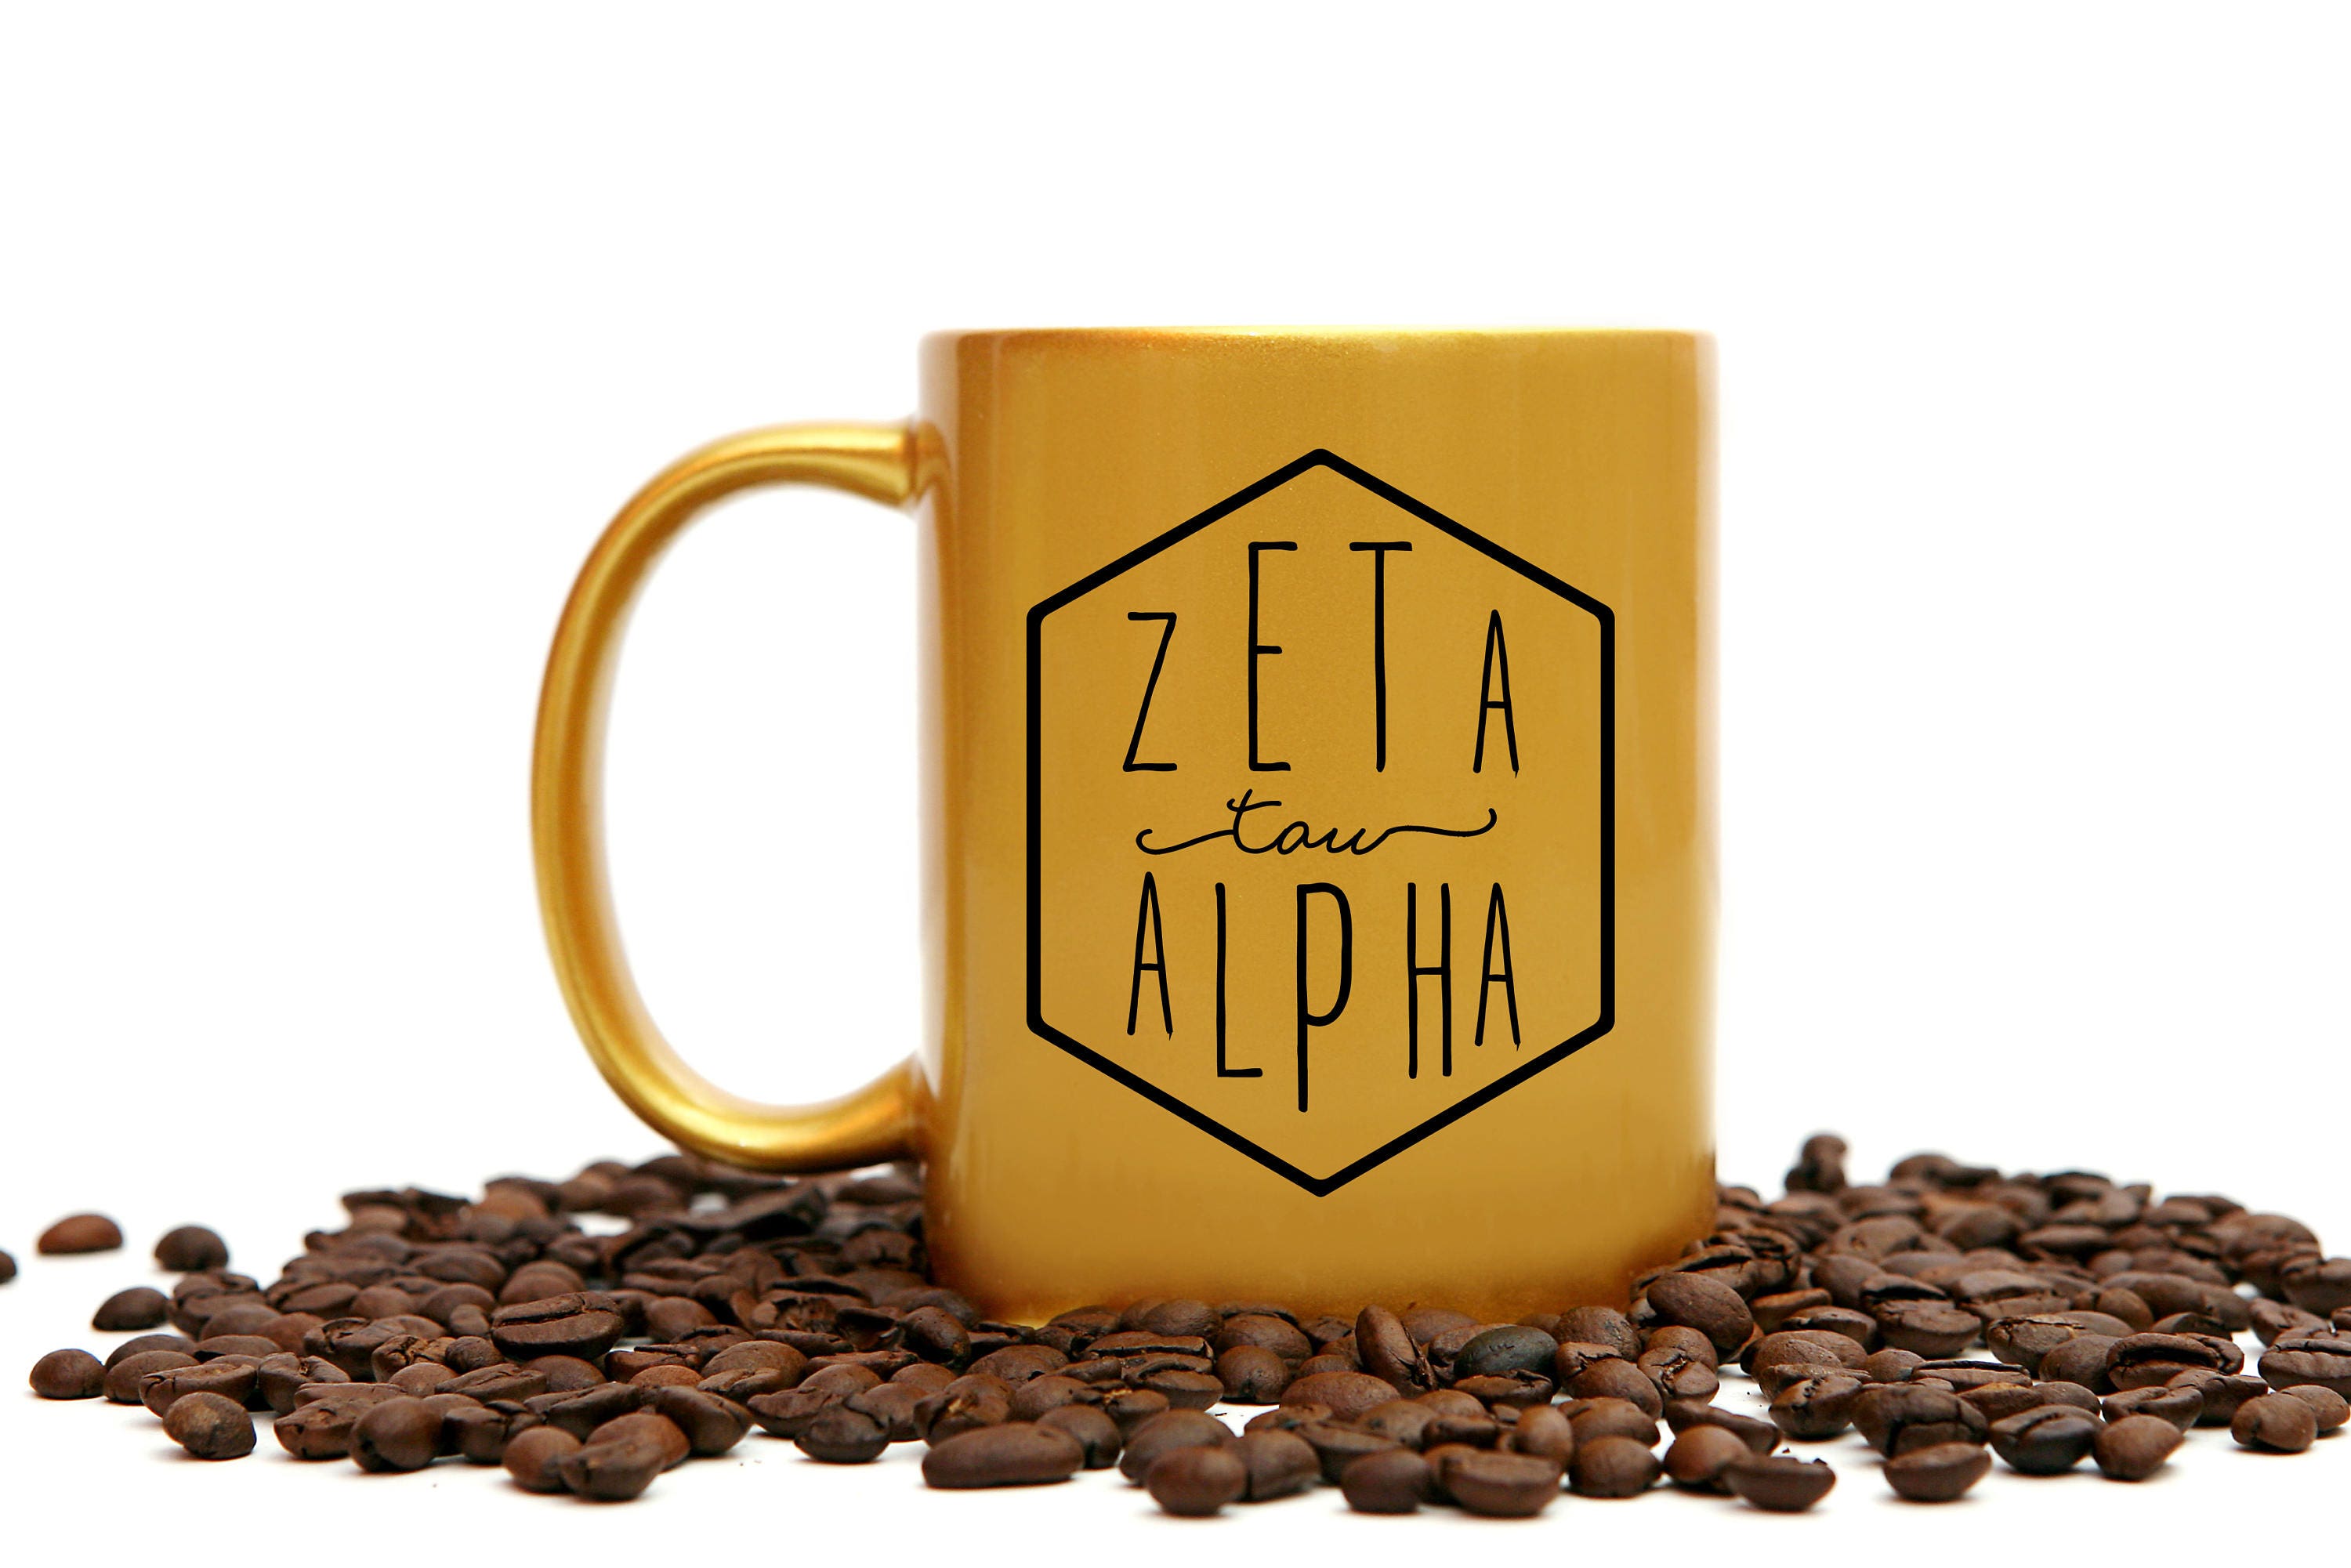 Zeta Tau Alpha Gold Coffee Mug - Go Greek Chic